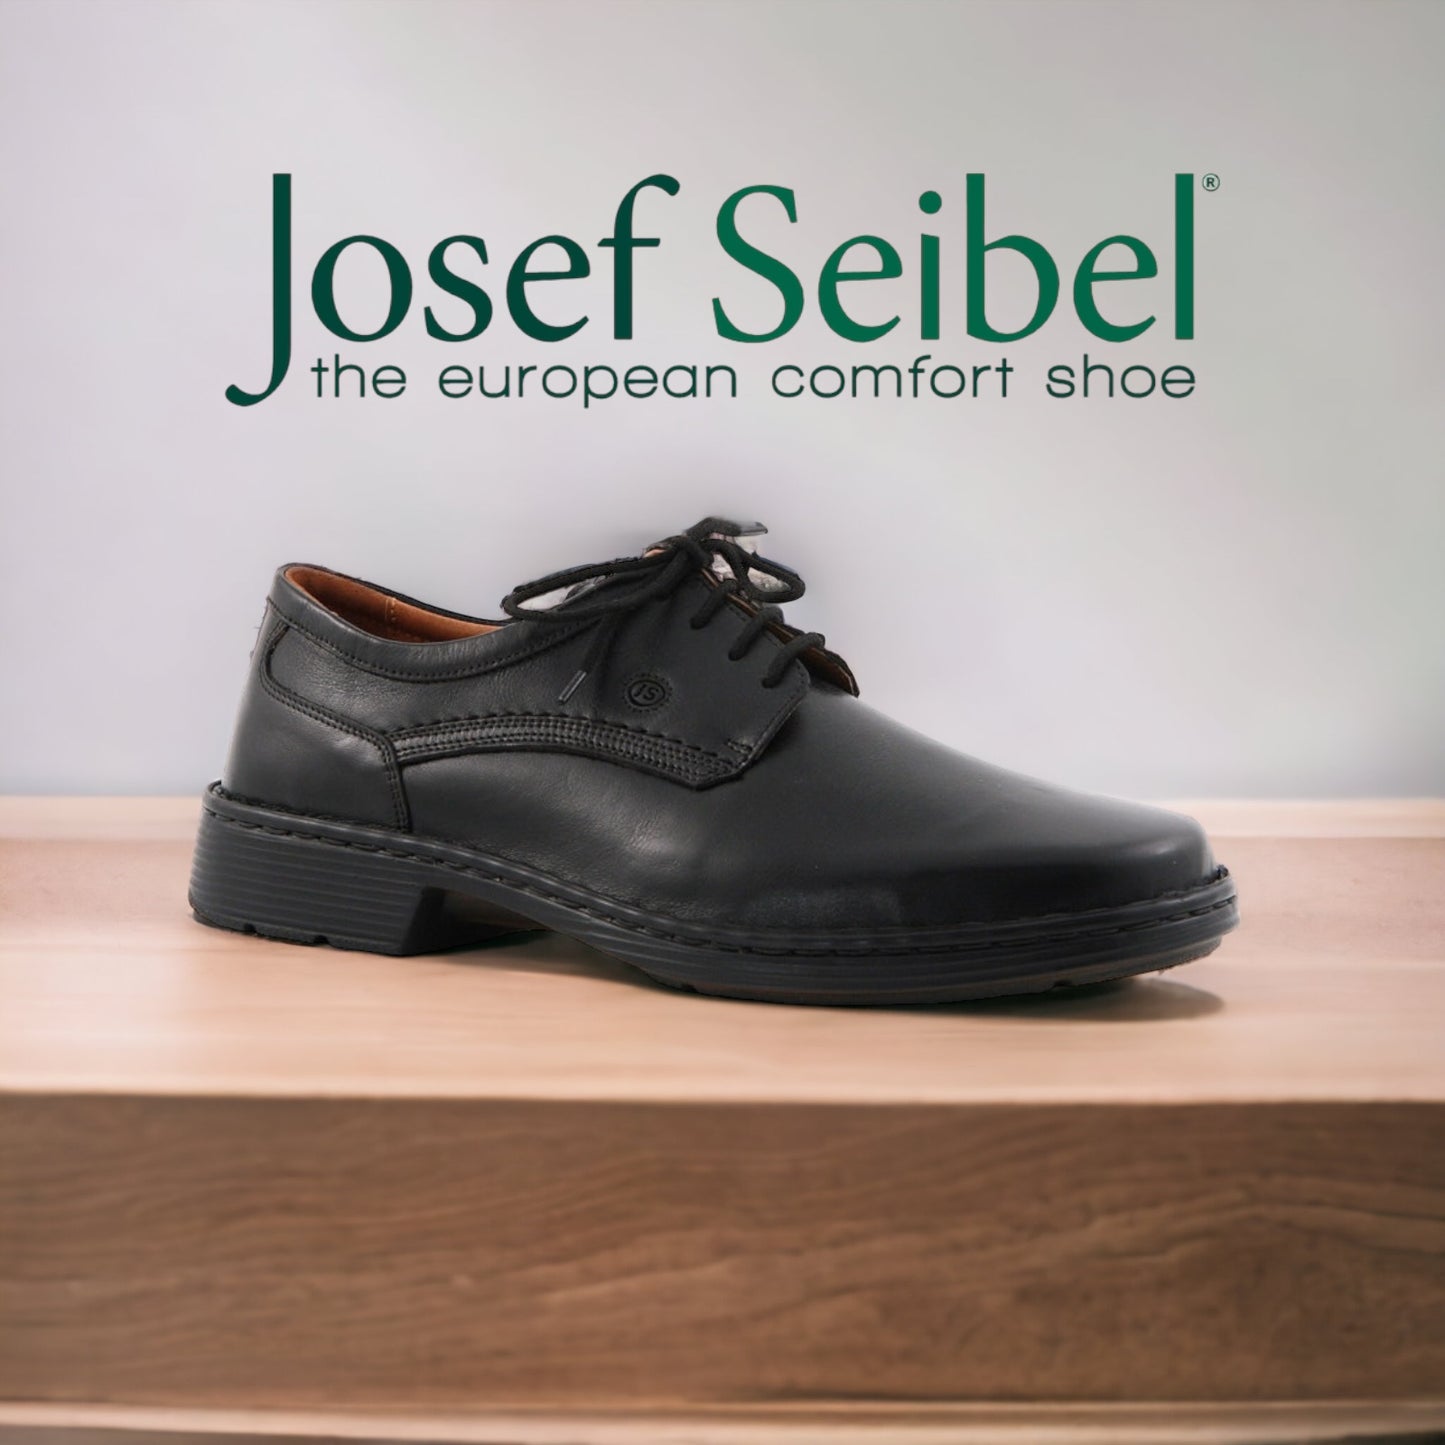 Josef Seibel Talcott black leather - wide fit - Kirbys Footwear Ltd